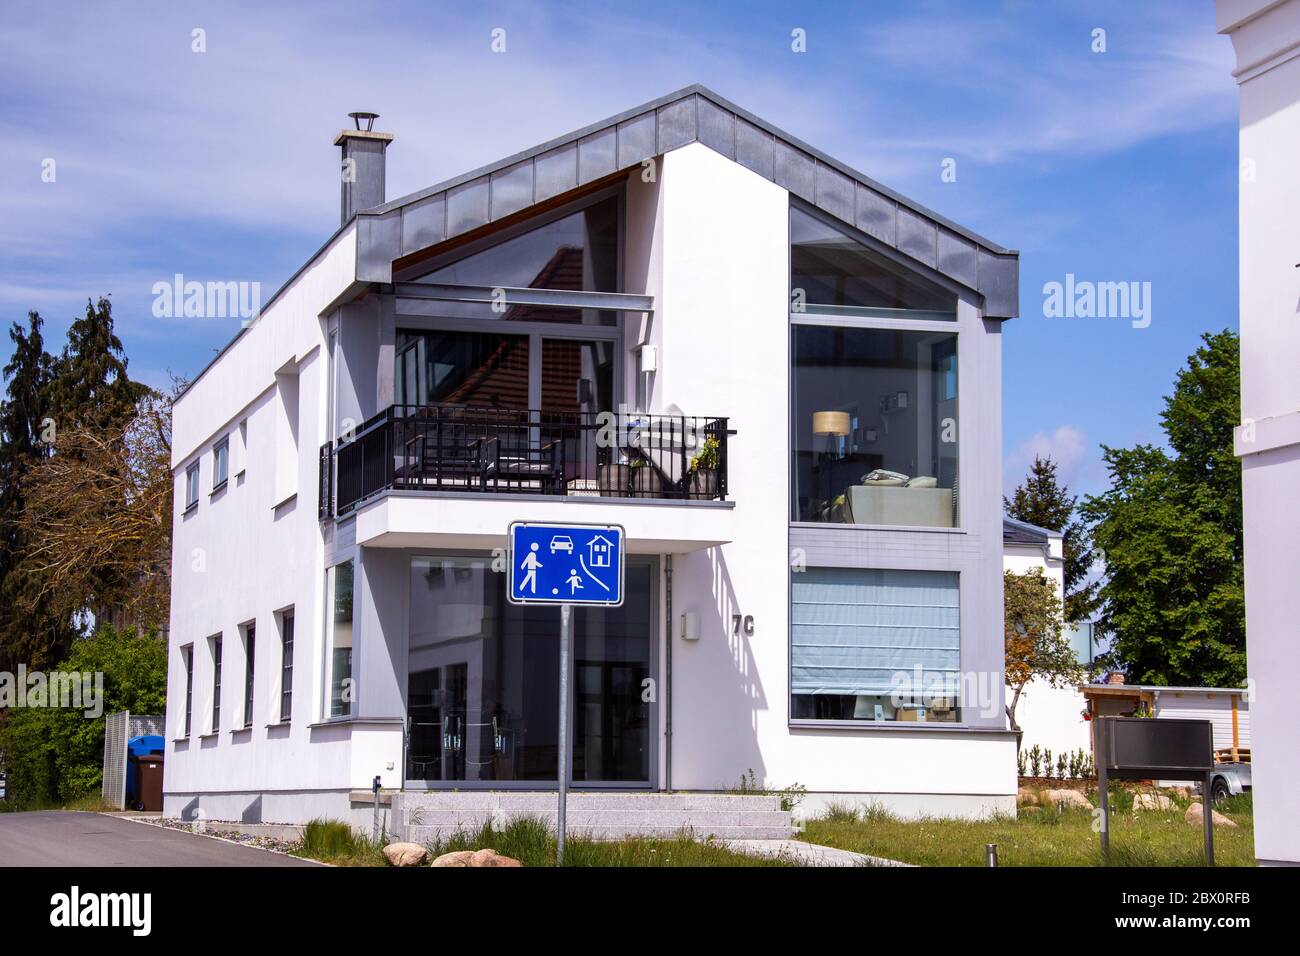 Neu Reddevitz, Allemagne. 24 mai 2020. Un immeuble résidentiel et commercial modernisé sur la place du marché de la ville de Putbus sur l'île de Rügen. Rügen est la plus grande île allemande en termes de superficie et, avec une population d'environ 77,000 000 habitants, la plus peuplée. Credit: Jens Büttner/dpa-Zentralbild/ZB/dpa/Alay Live News Banque D'Images